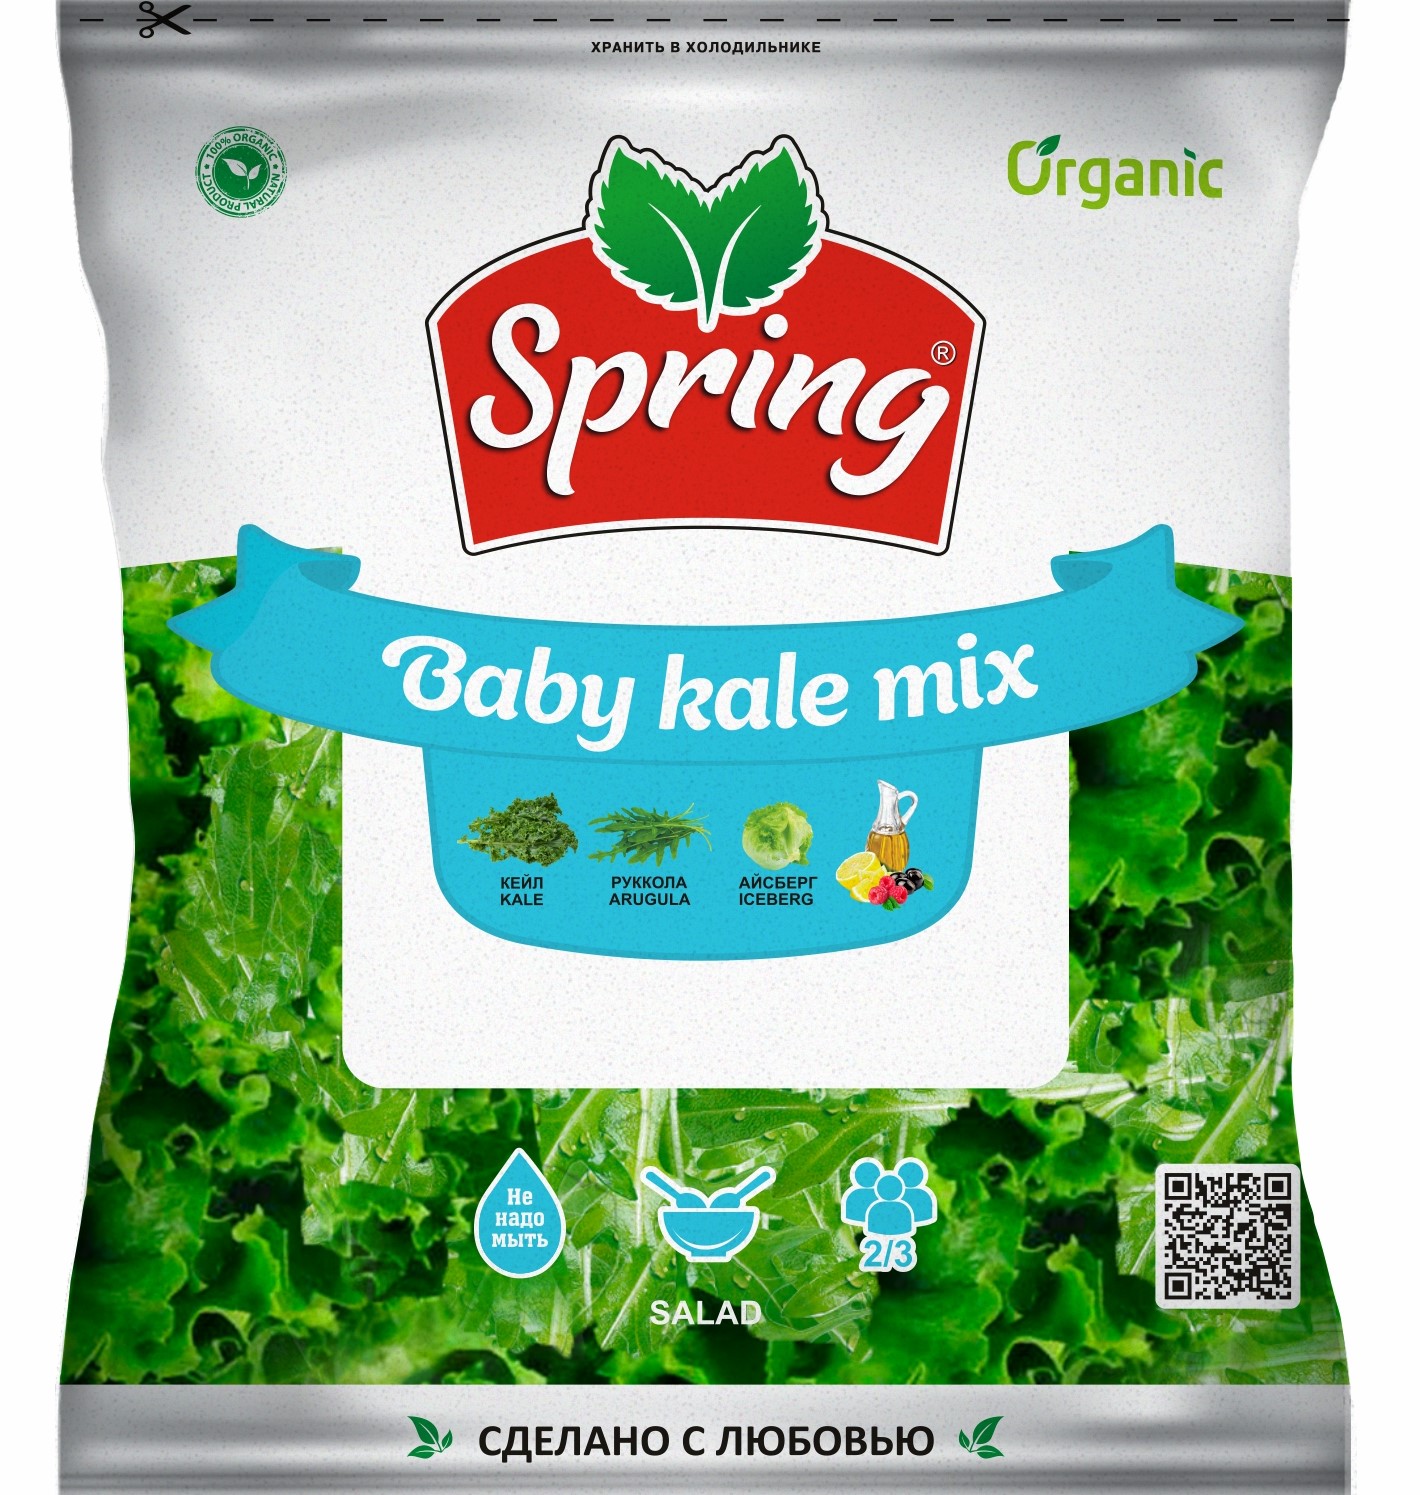 Baby Kale mix